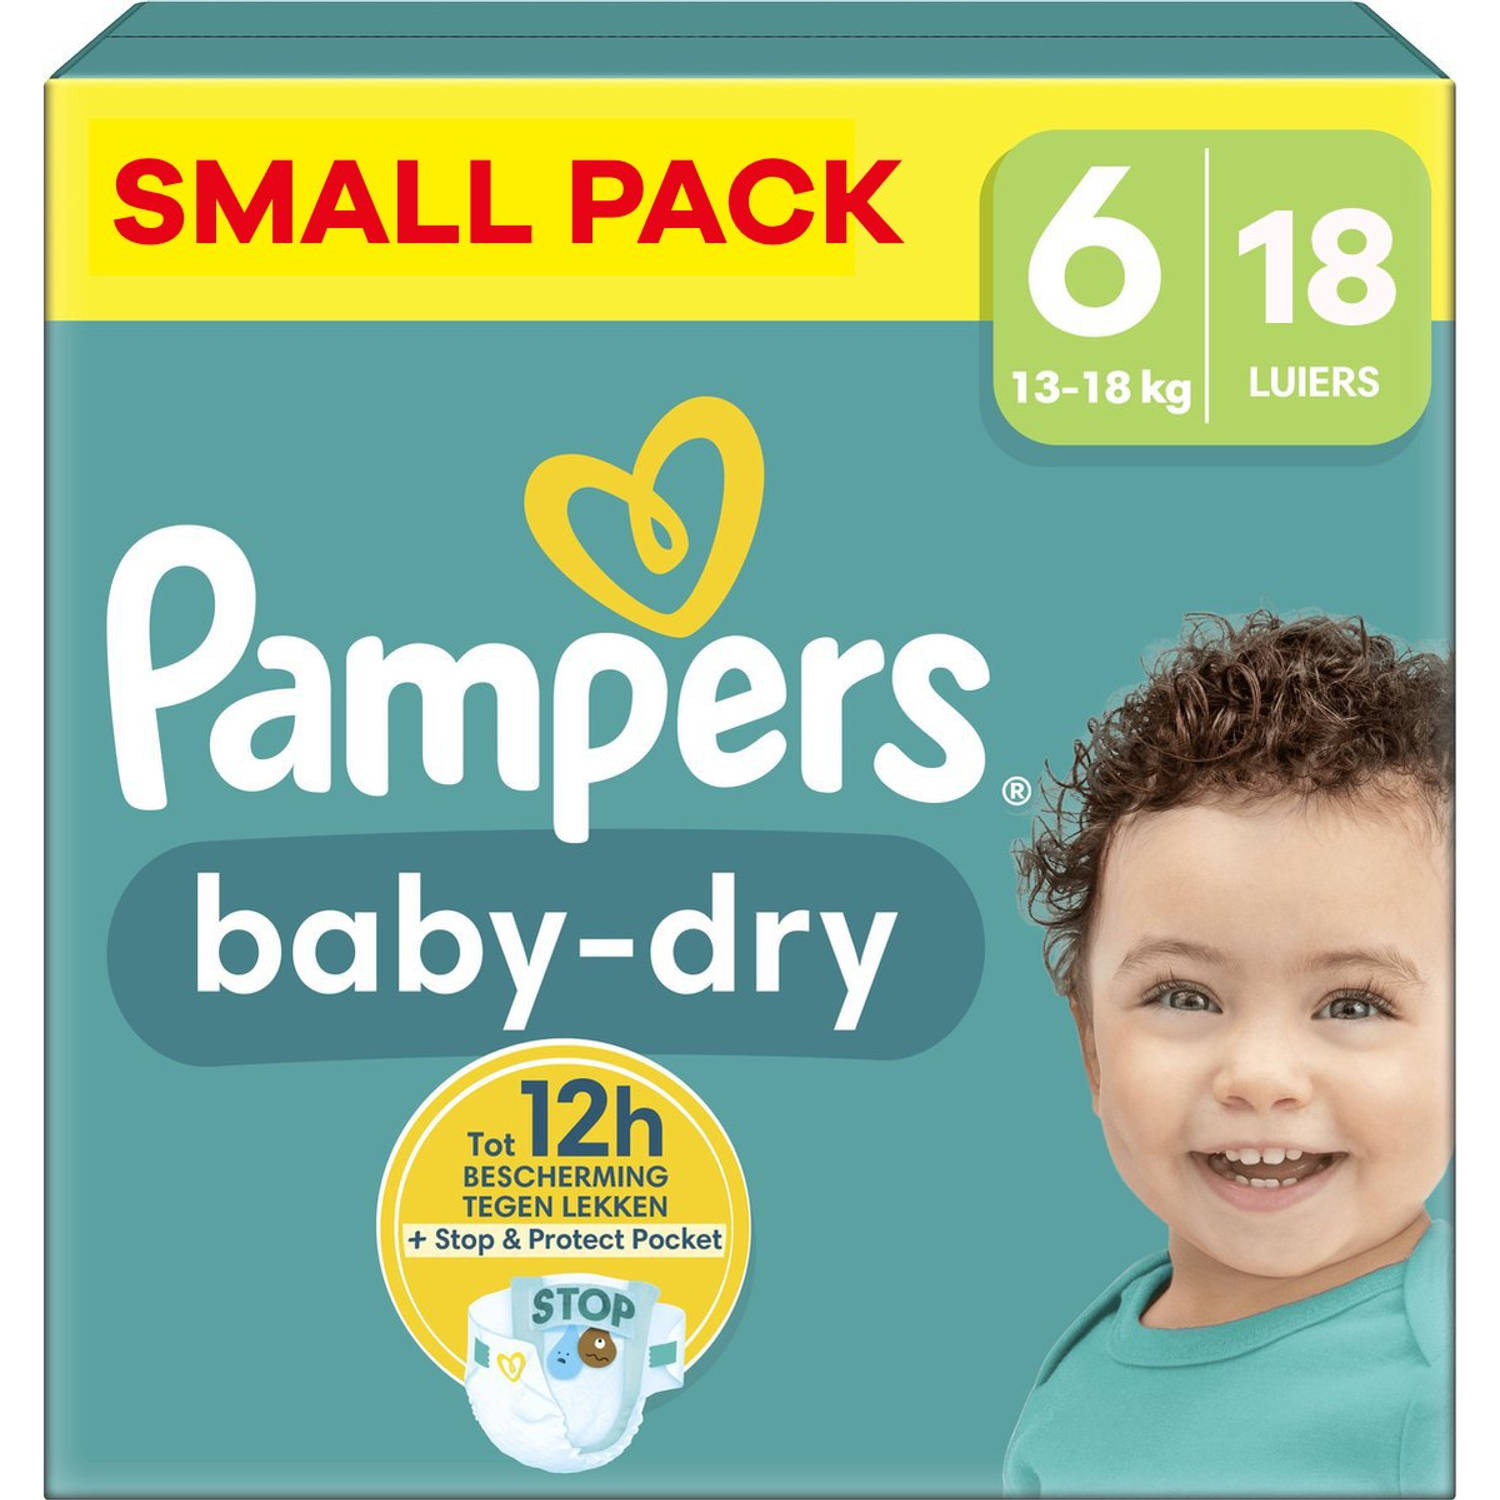 Pampers Baby Dry Maat 6 Small Pack 18 luiers 13-18 KG